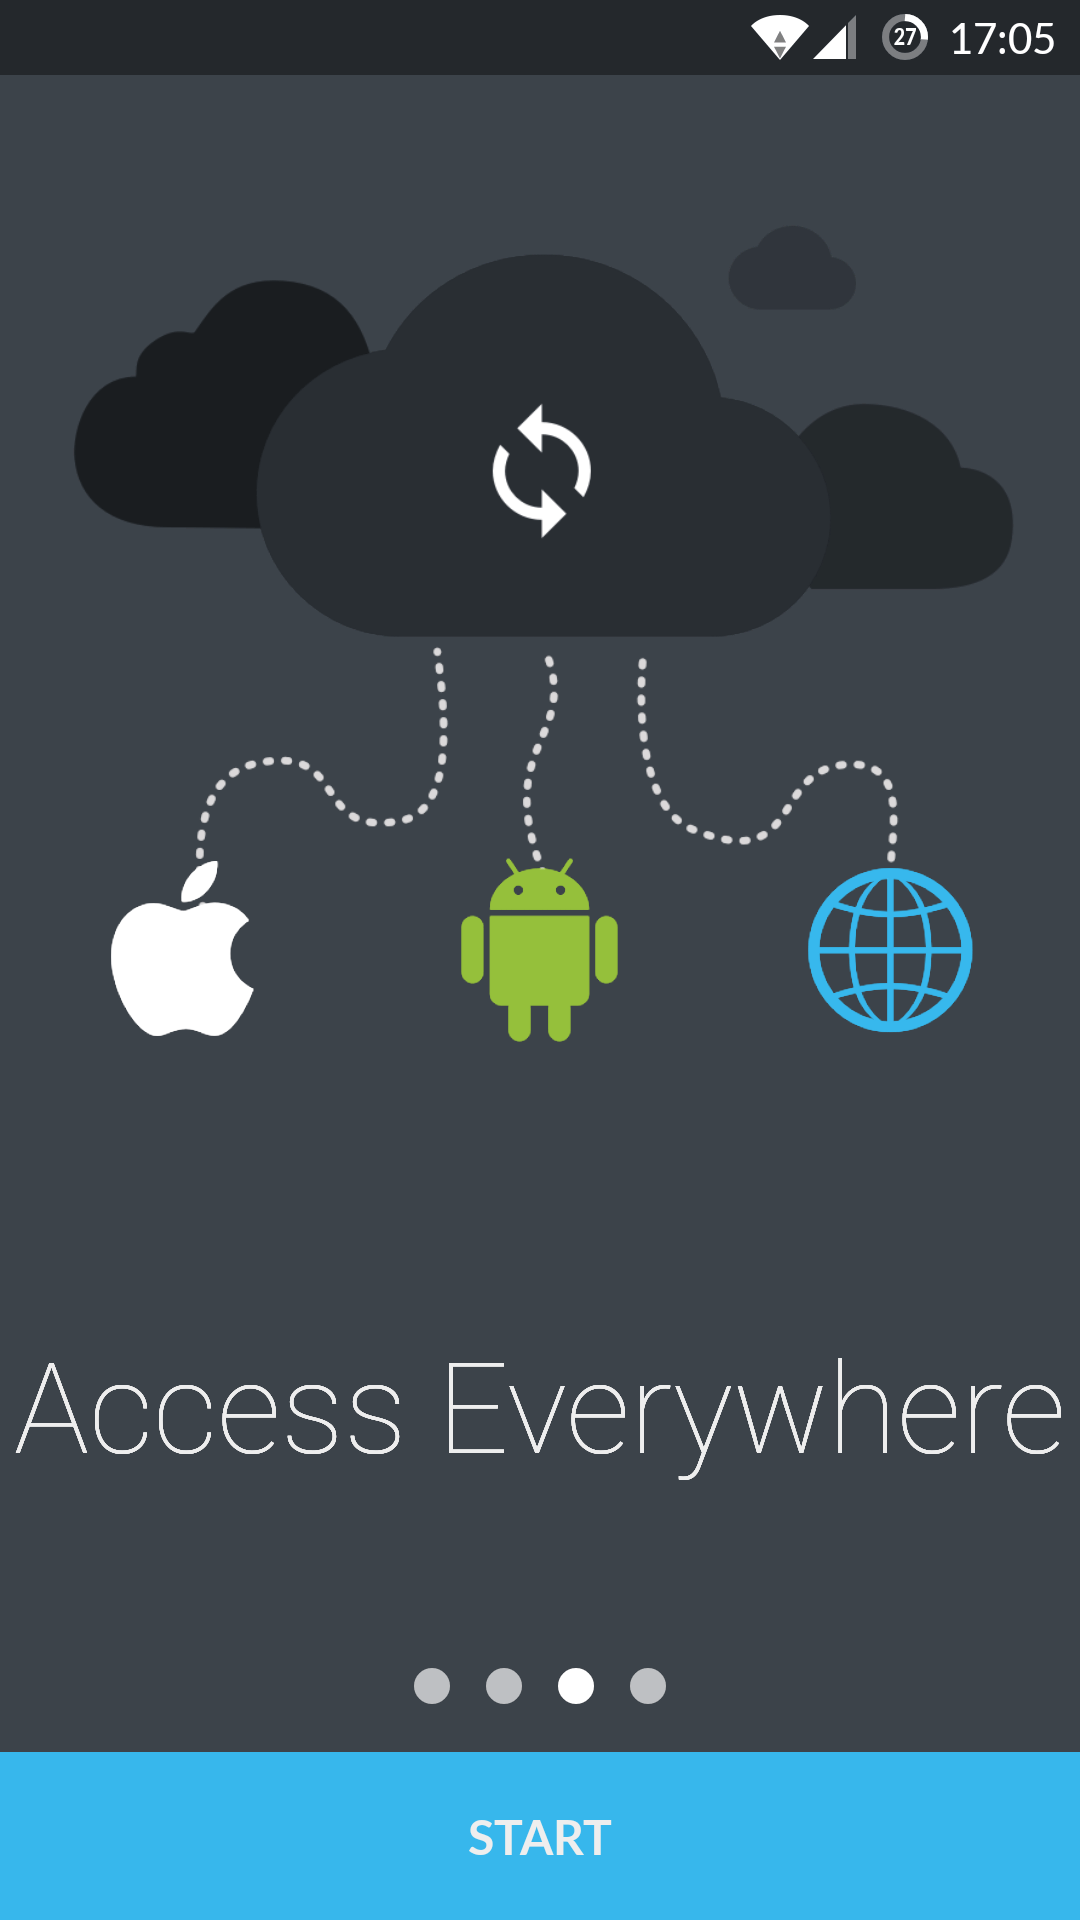 Troisième slide de présentation, avec une illustration du logo d'apple, d'android et d'internet liés à un nuage.